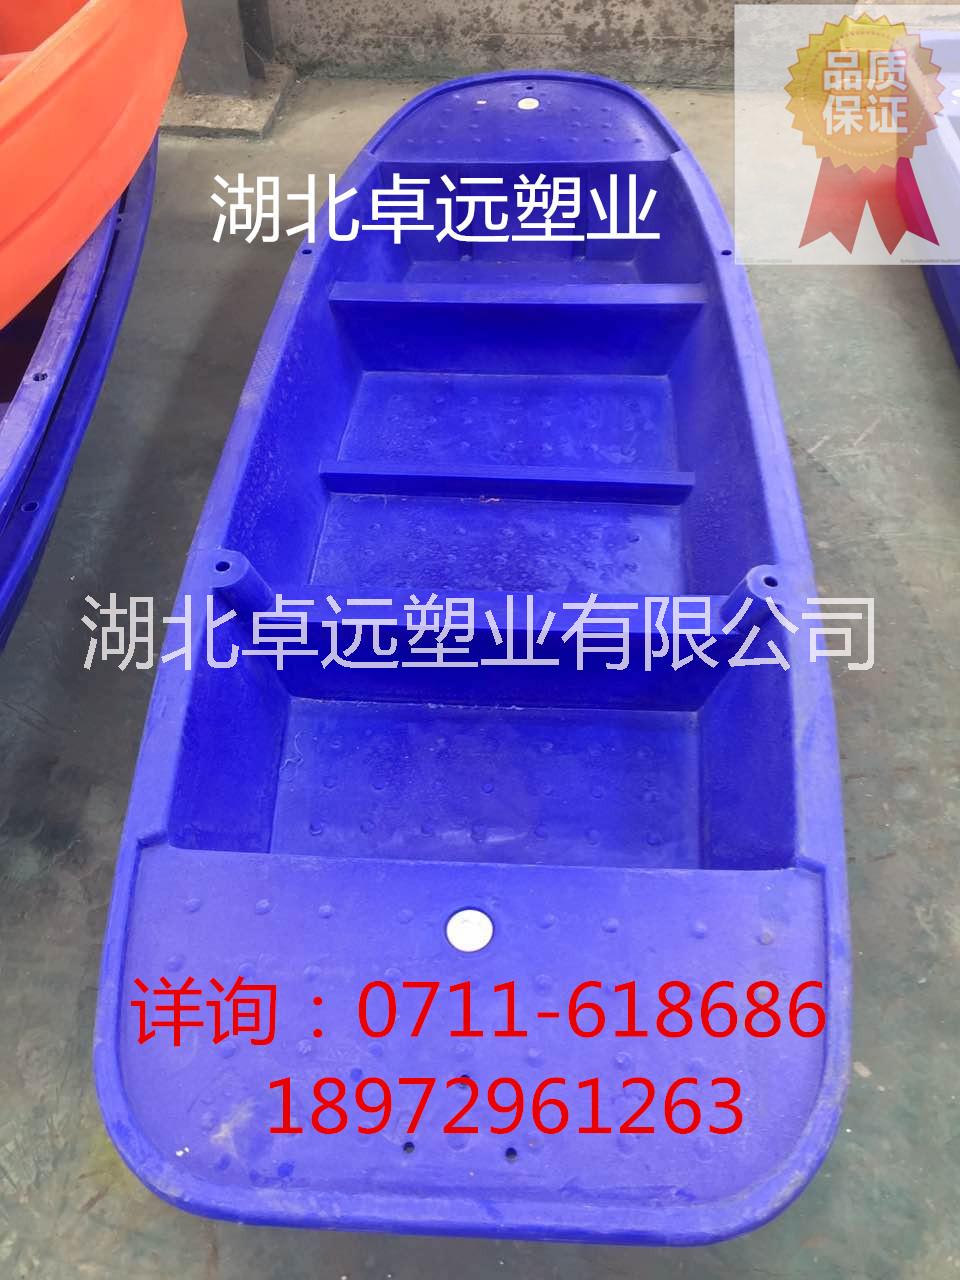 小型塑料船湖北厂家直销塑料渔船